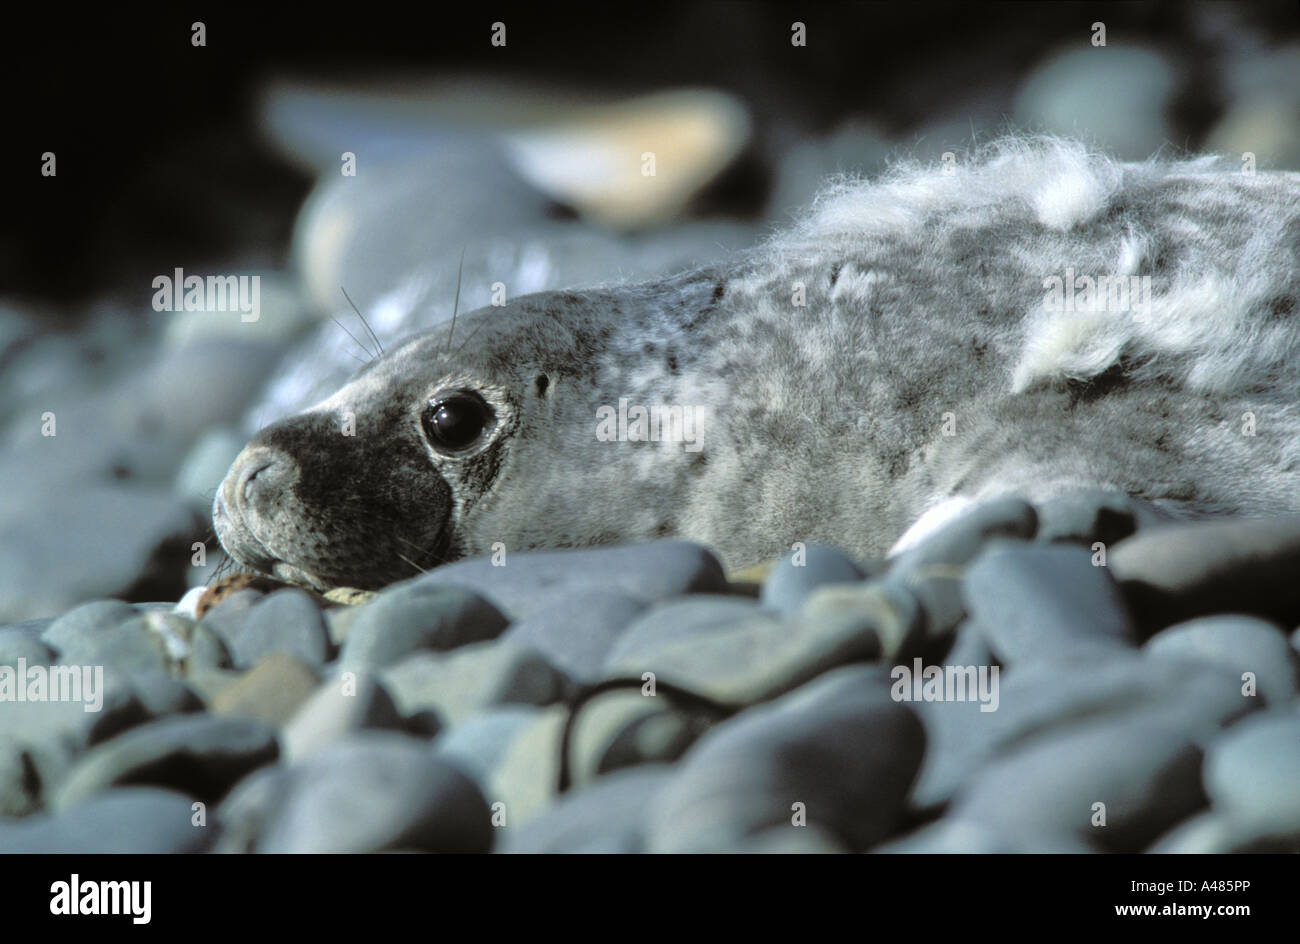 Phoque gris de l'Atlantique pup mue fourrure de pup Halichoerus grypus Skomer Island Pembrokeshire pays de Galles Royaume-Uni Europe Banque D'Images